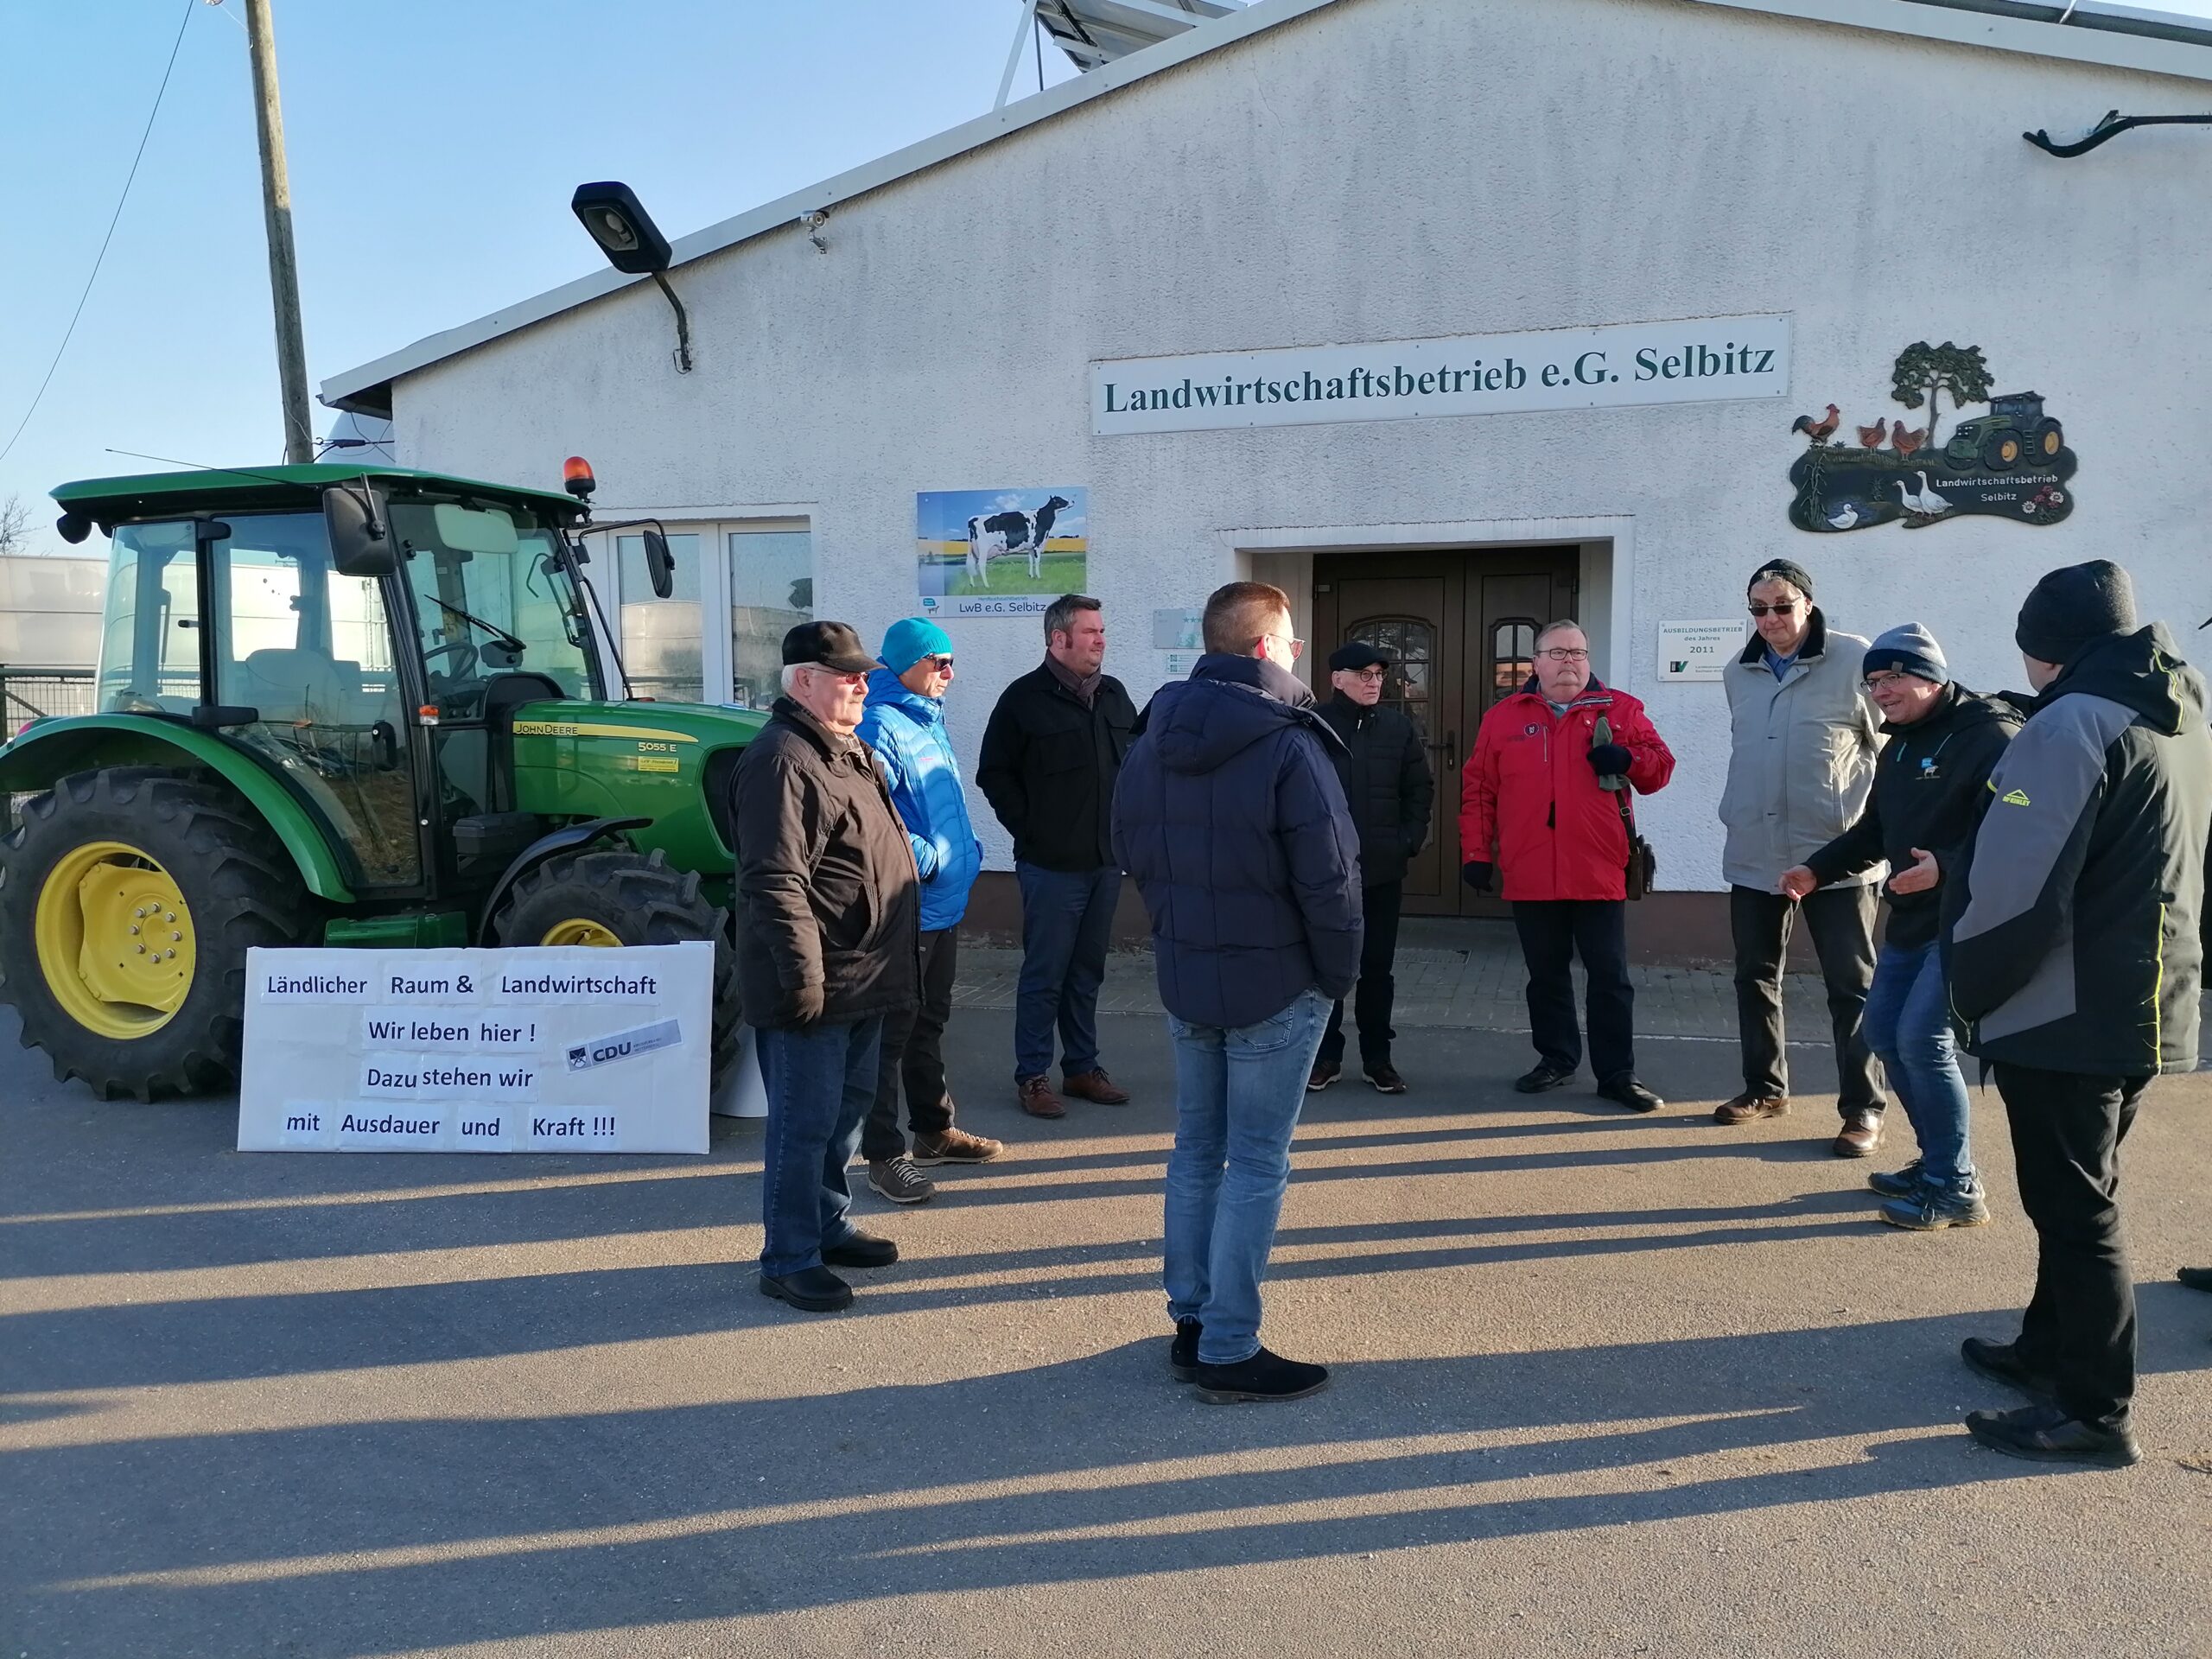 Besuch des Landwirtschaftsbetriebes Selbitz e.G. im Rahmen der Bauernproteste